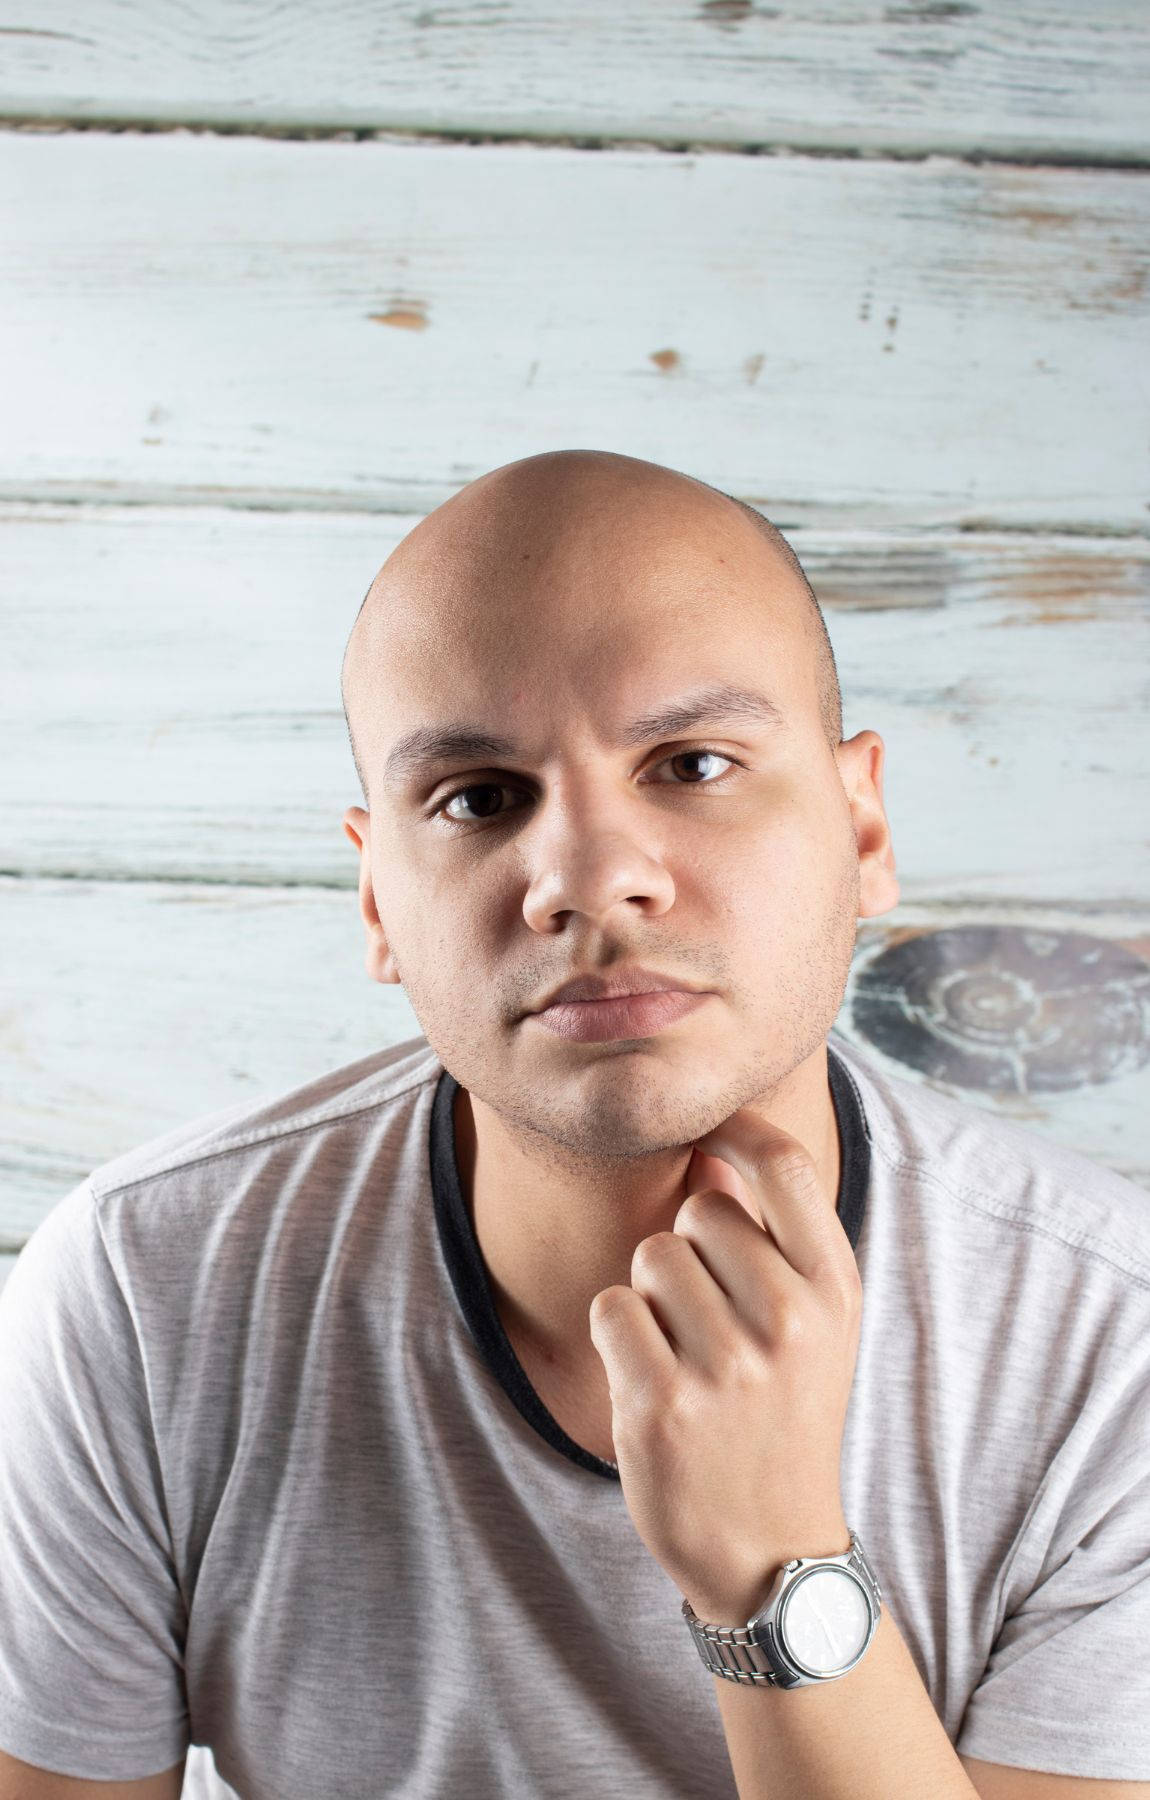 Bald Man Wearing A Gray Shirt Wallpaper